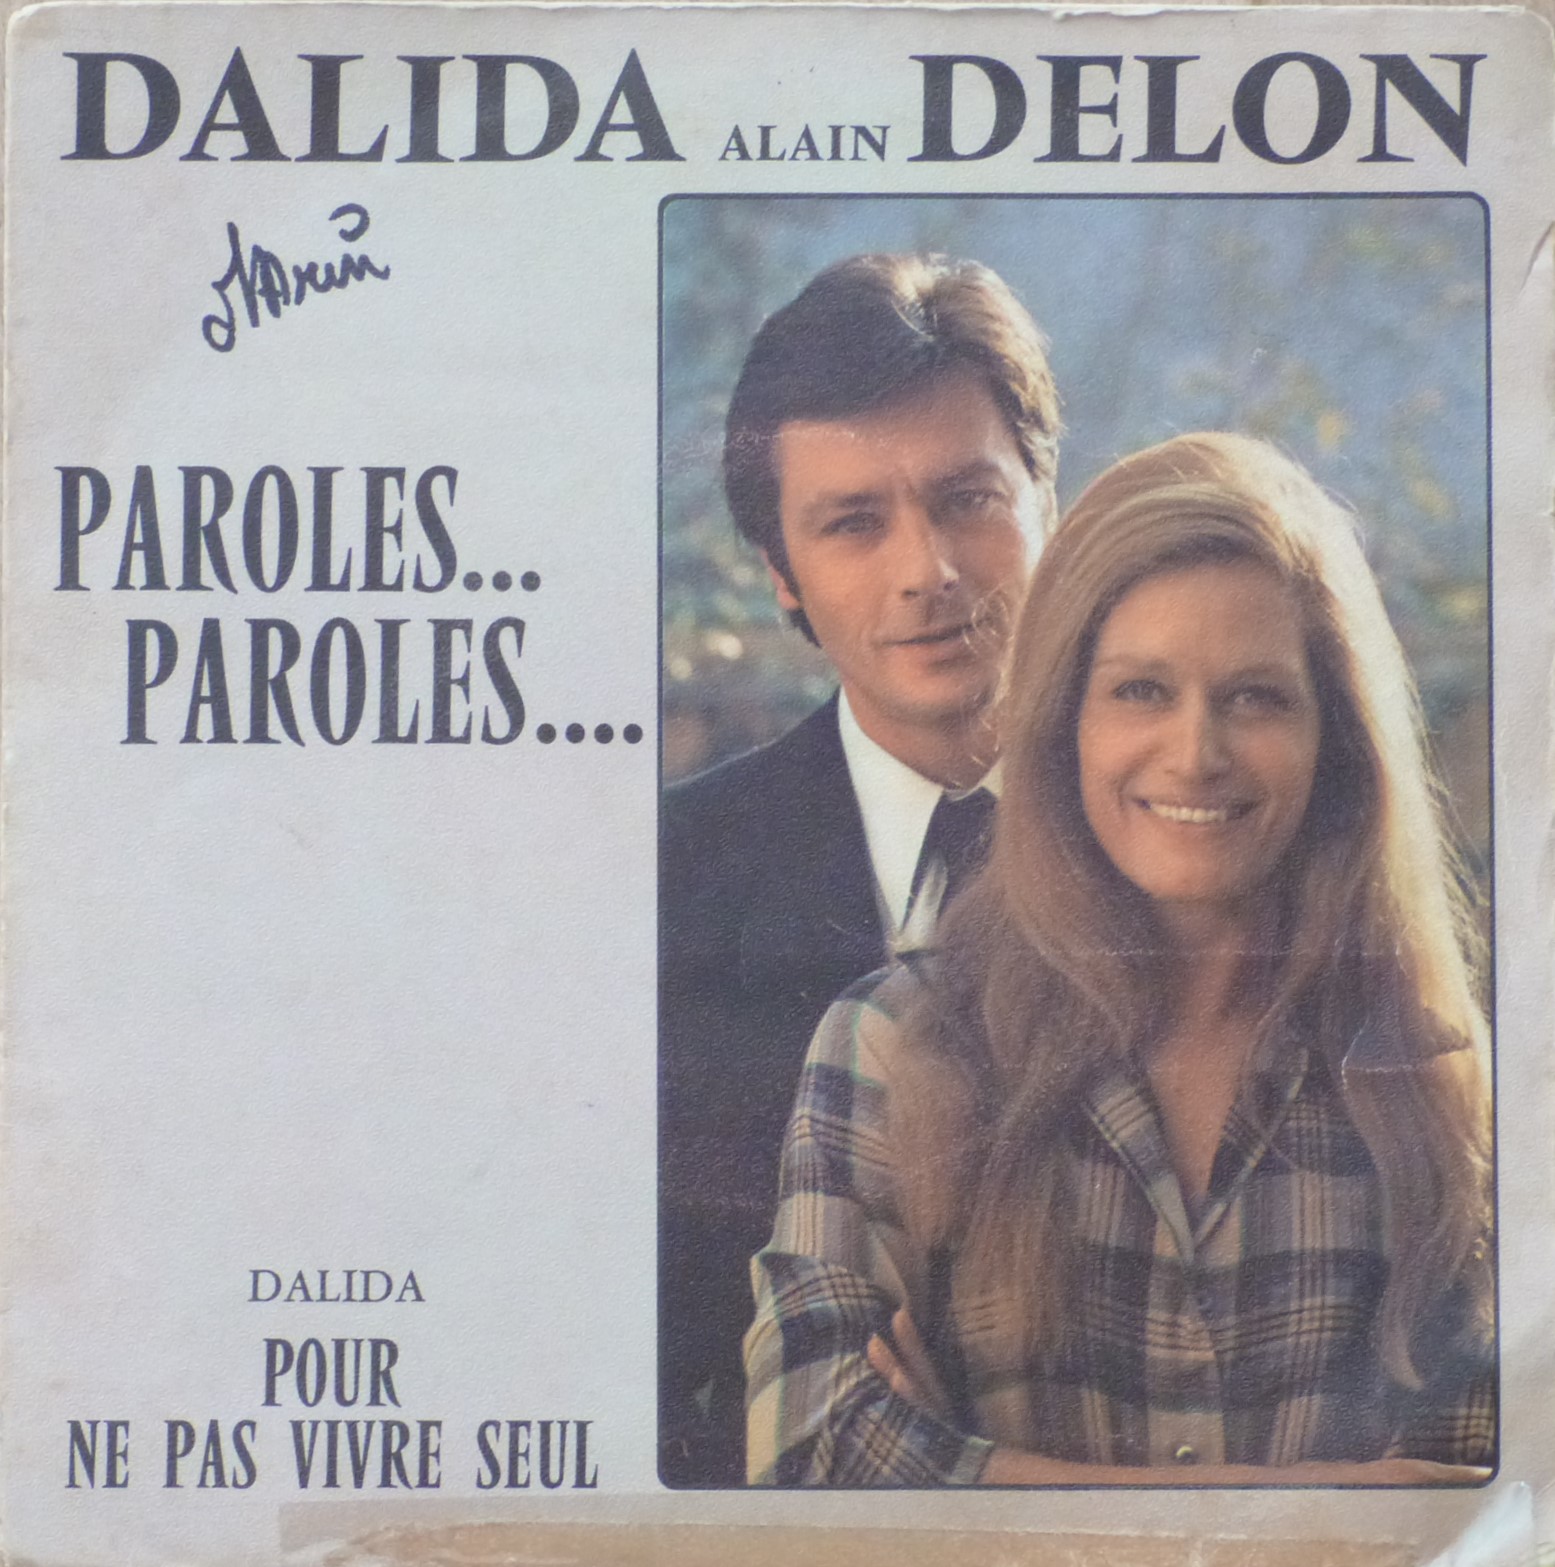 Dalida, Delon